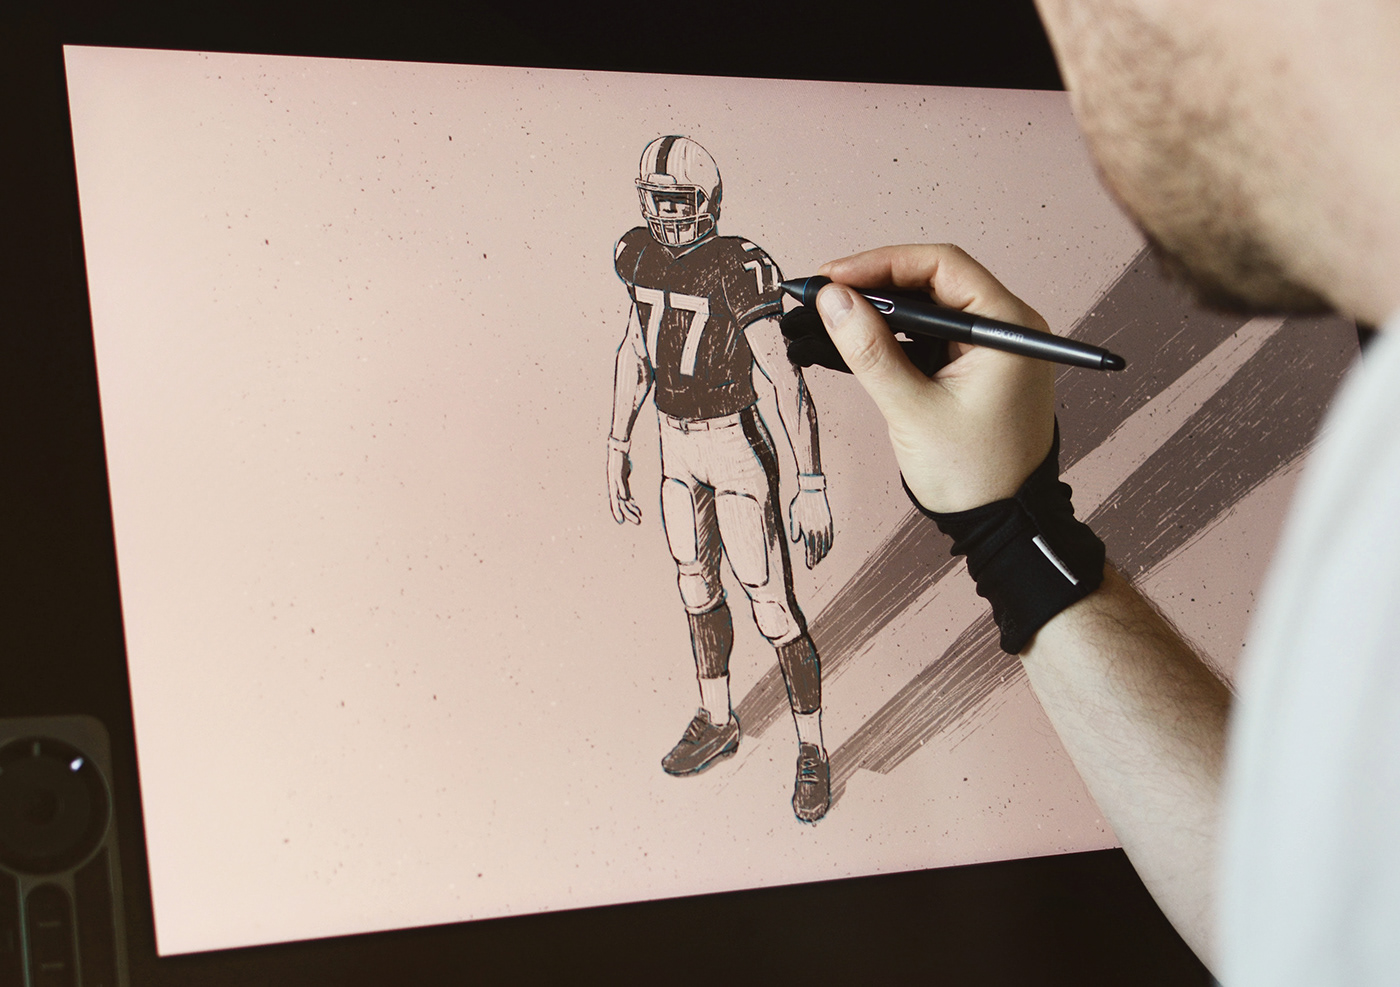 EA SPORTS football madden Madden NFL Minimalism minimalist nfl poster sports superbowl